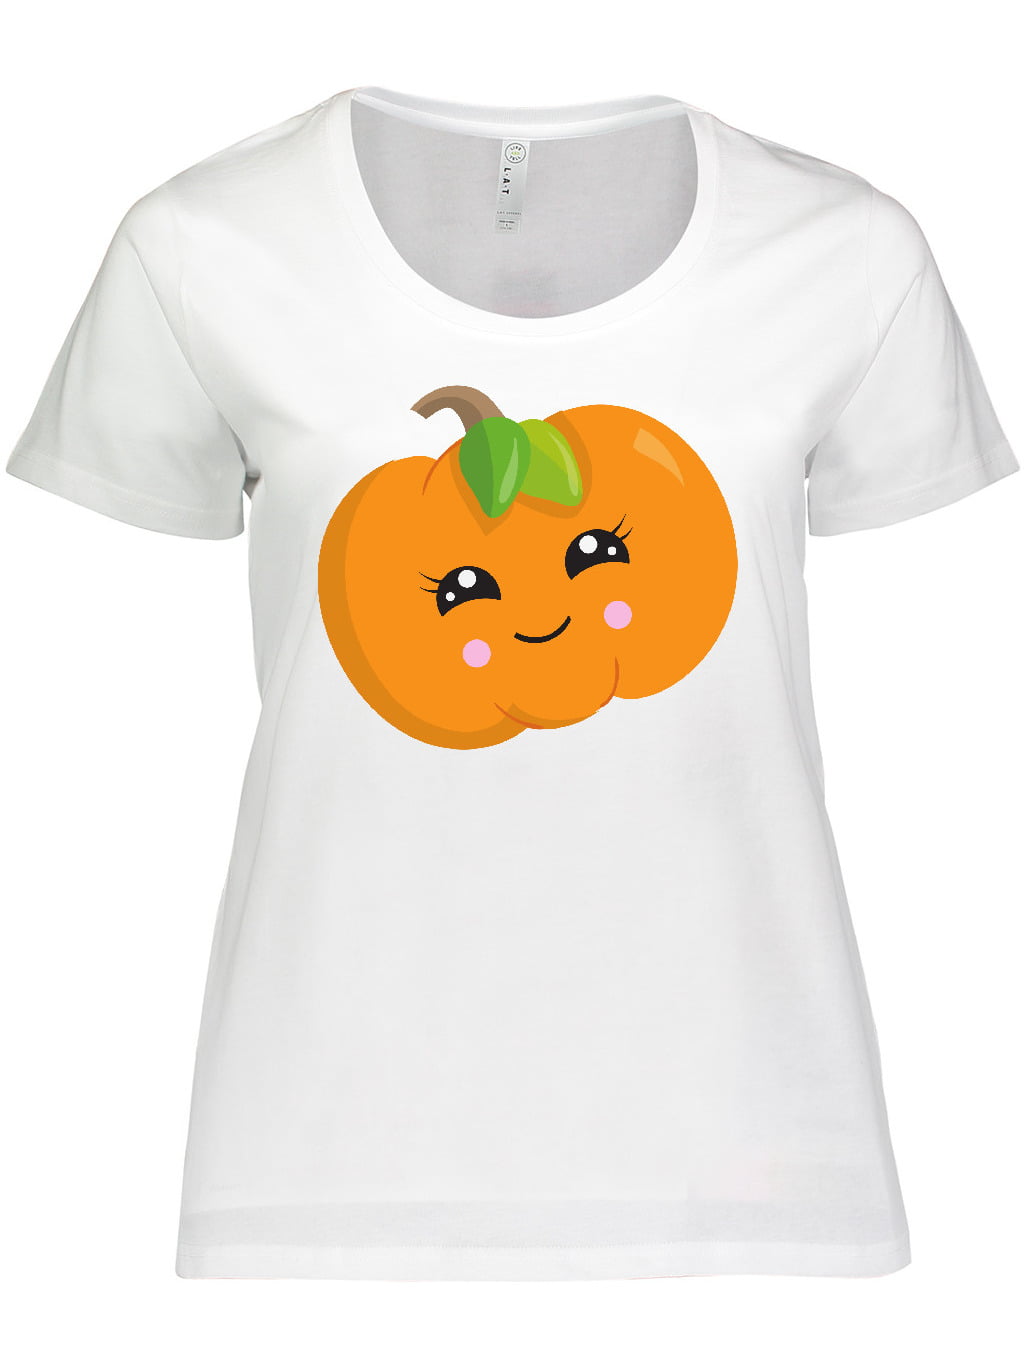 Pumpkin Shirt Women Plus Size Halloween Shirt Buffalo Check Pumpkin Buffalo Plaid Pumpkin Shirt Pumpkin Shirt Pumpkin Patch Shirt